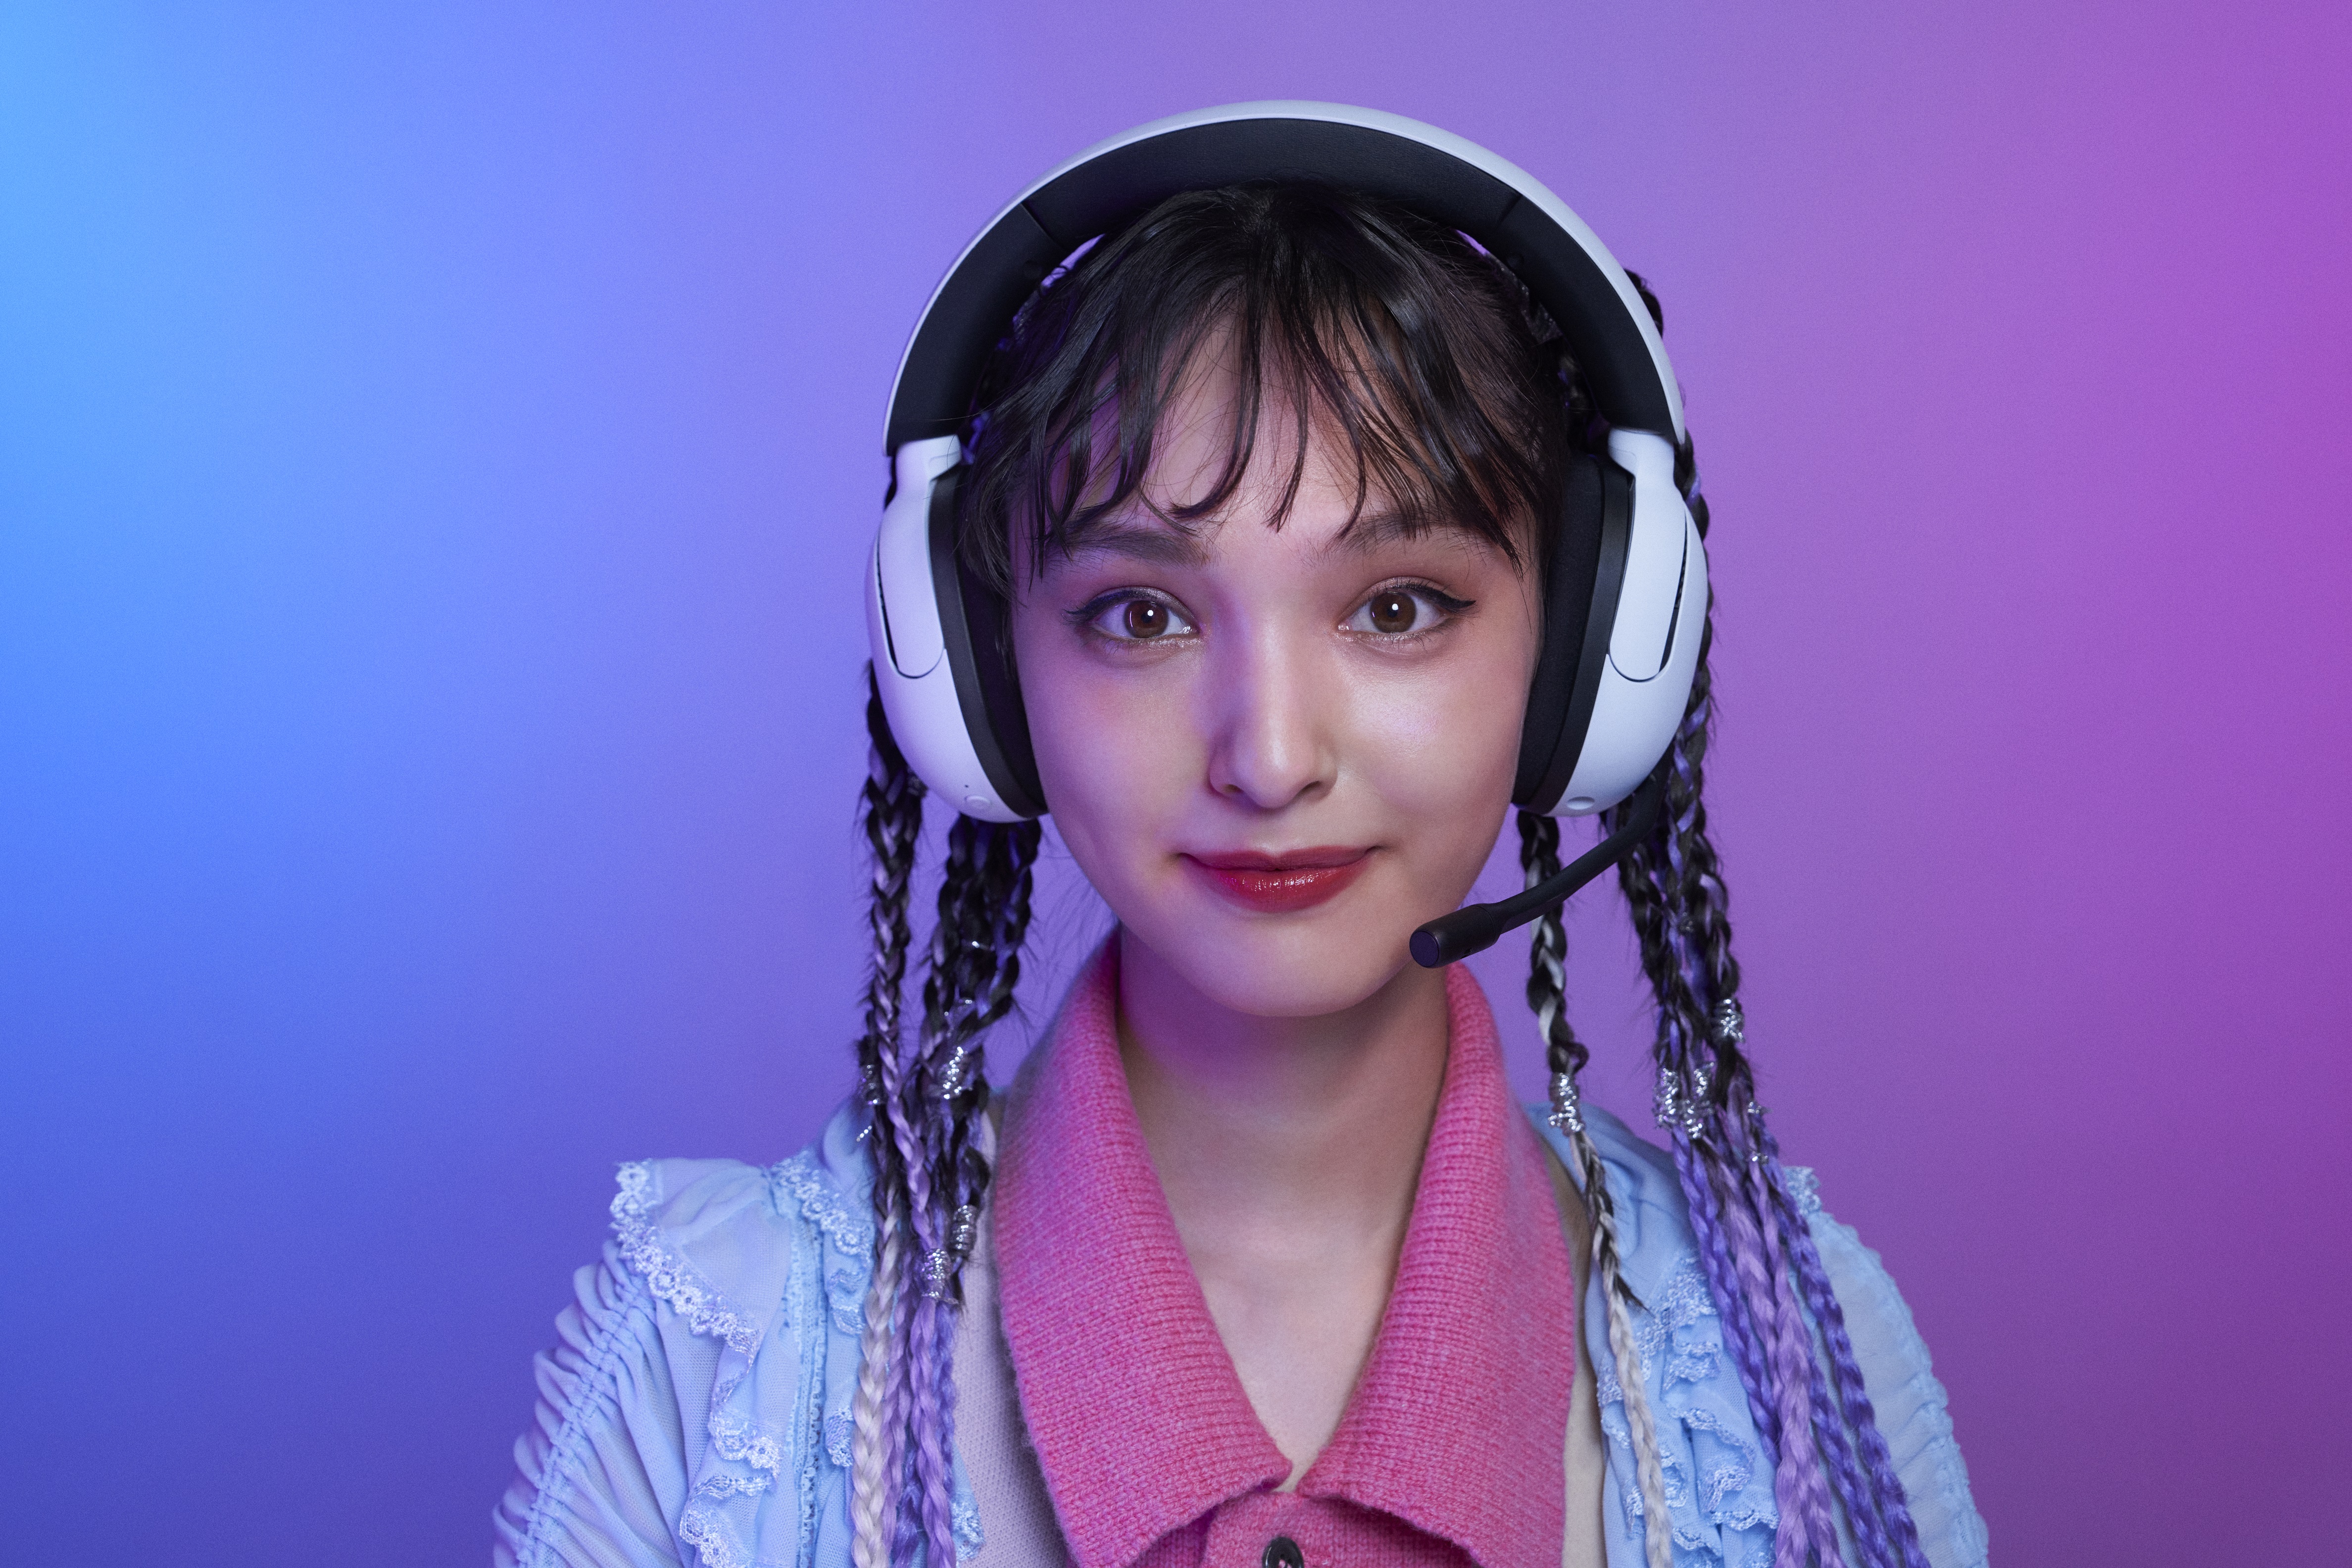 Sony presenta los Inzone Buds, auriculares inalámbricos para gaming - El  Periódico